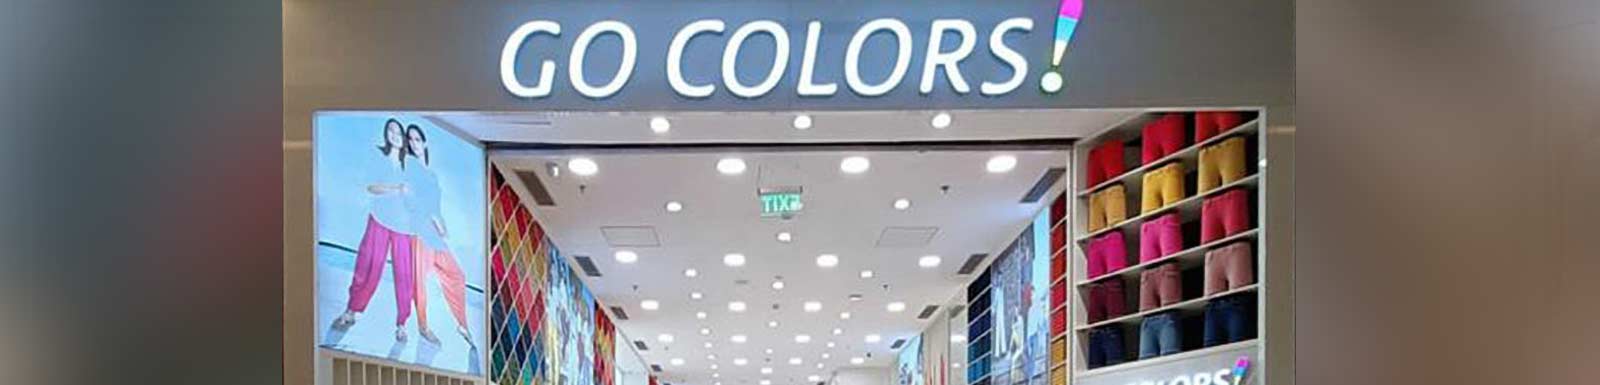 Go Colors, Lulu Mall, Lucknow